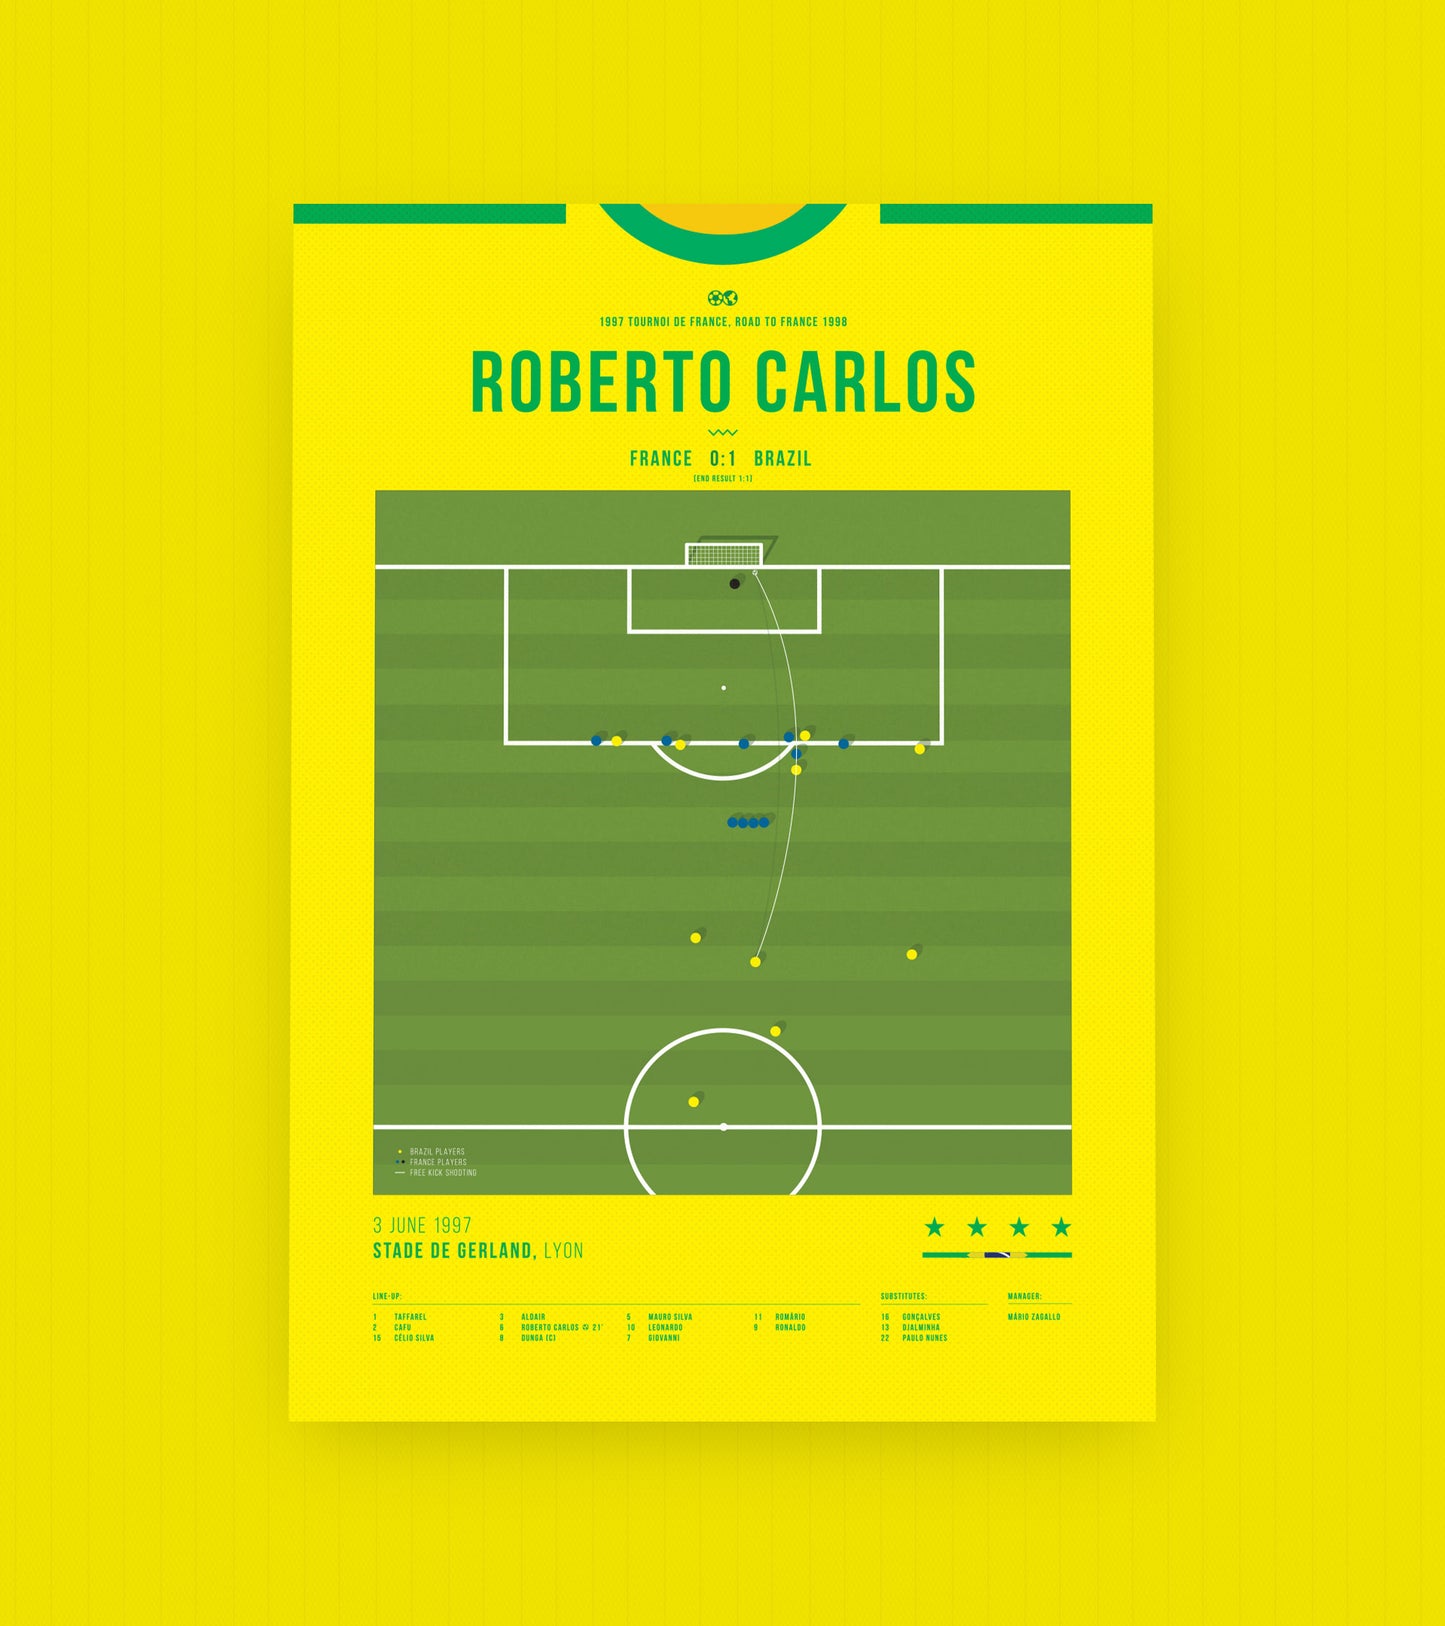 Der berühmte Freistoß von Roberto Carlos gegen Frankreich